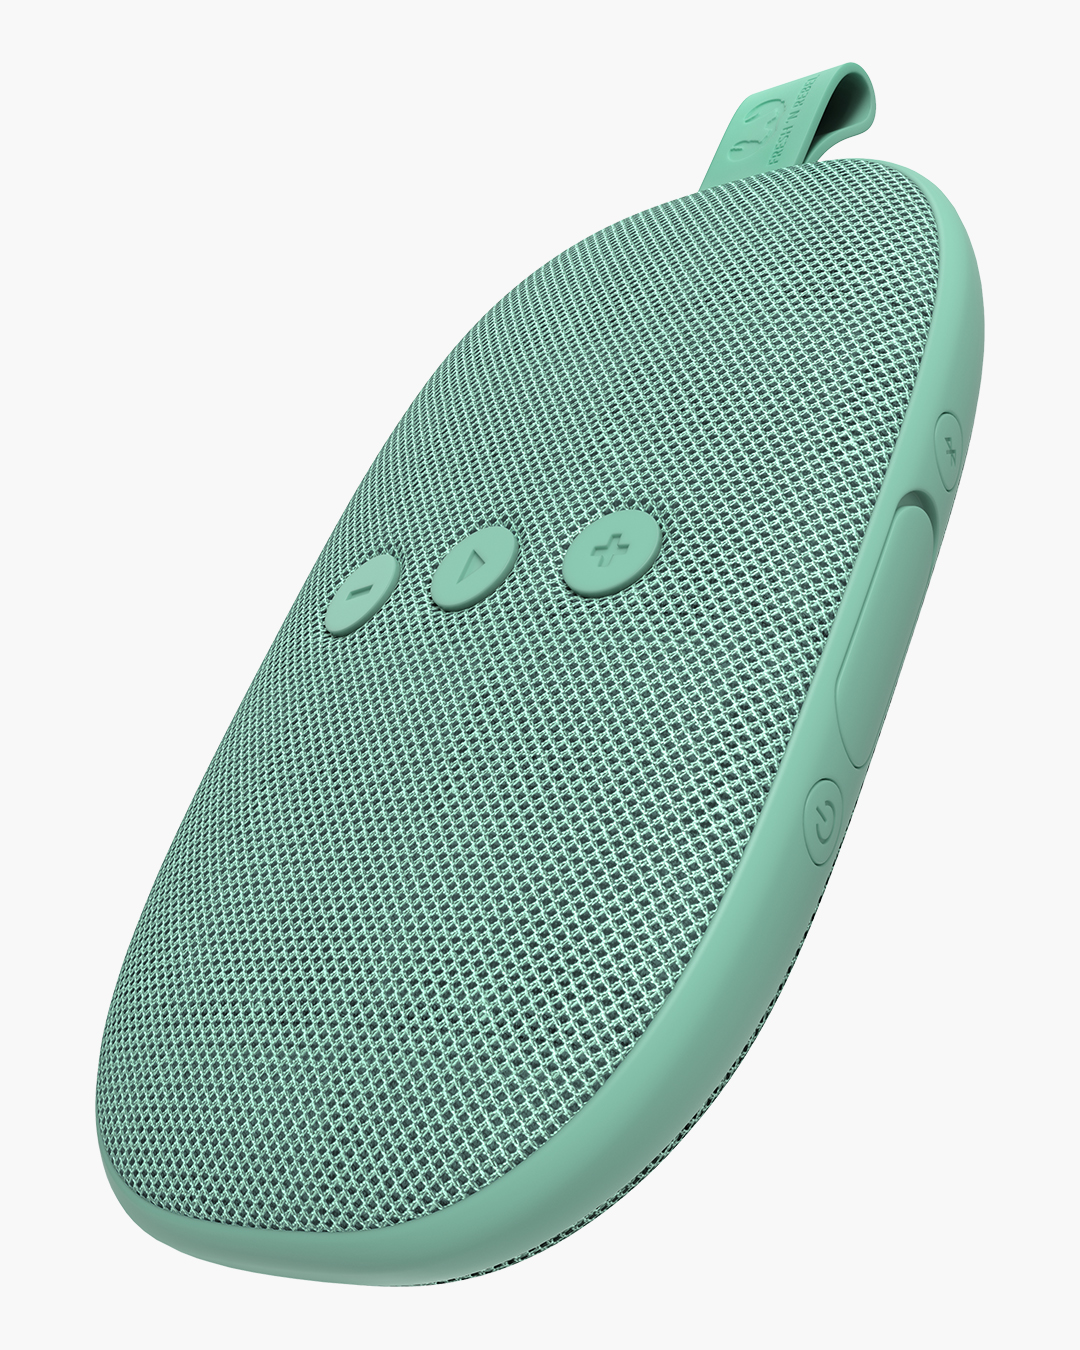 grigio chiaro Fresh ‘n Rebel Speaker Bluetooth Rockbox Pebble Cloud Altoparlante portatile wireless antiurto e splash / resistente agli schizzi / bassi profondi con 5 ore di autonomia vivavoce